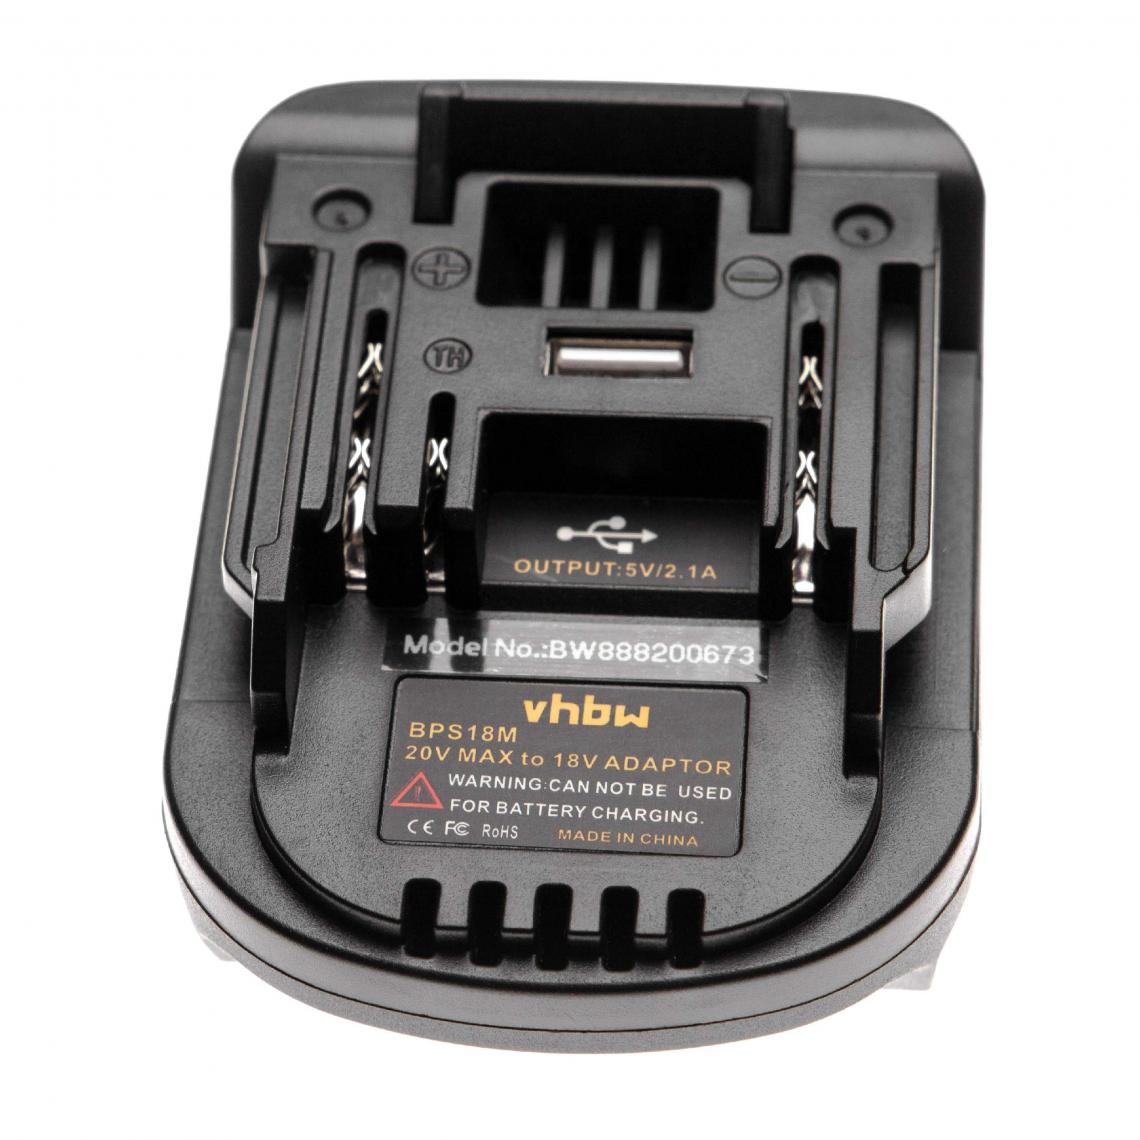 Vhbw - vhbw Adaptateur de batterie compatible avec Stanley outils électriques - Adaptateur batteries Li-ion 20 V vers 18 V compatible avec Makita - Accessoires vissage, perçage